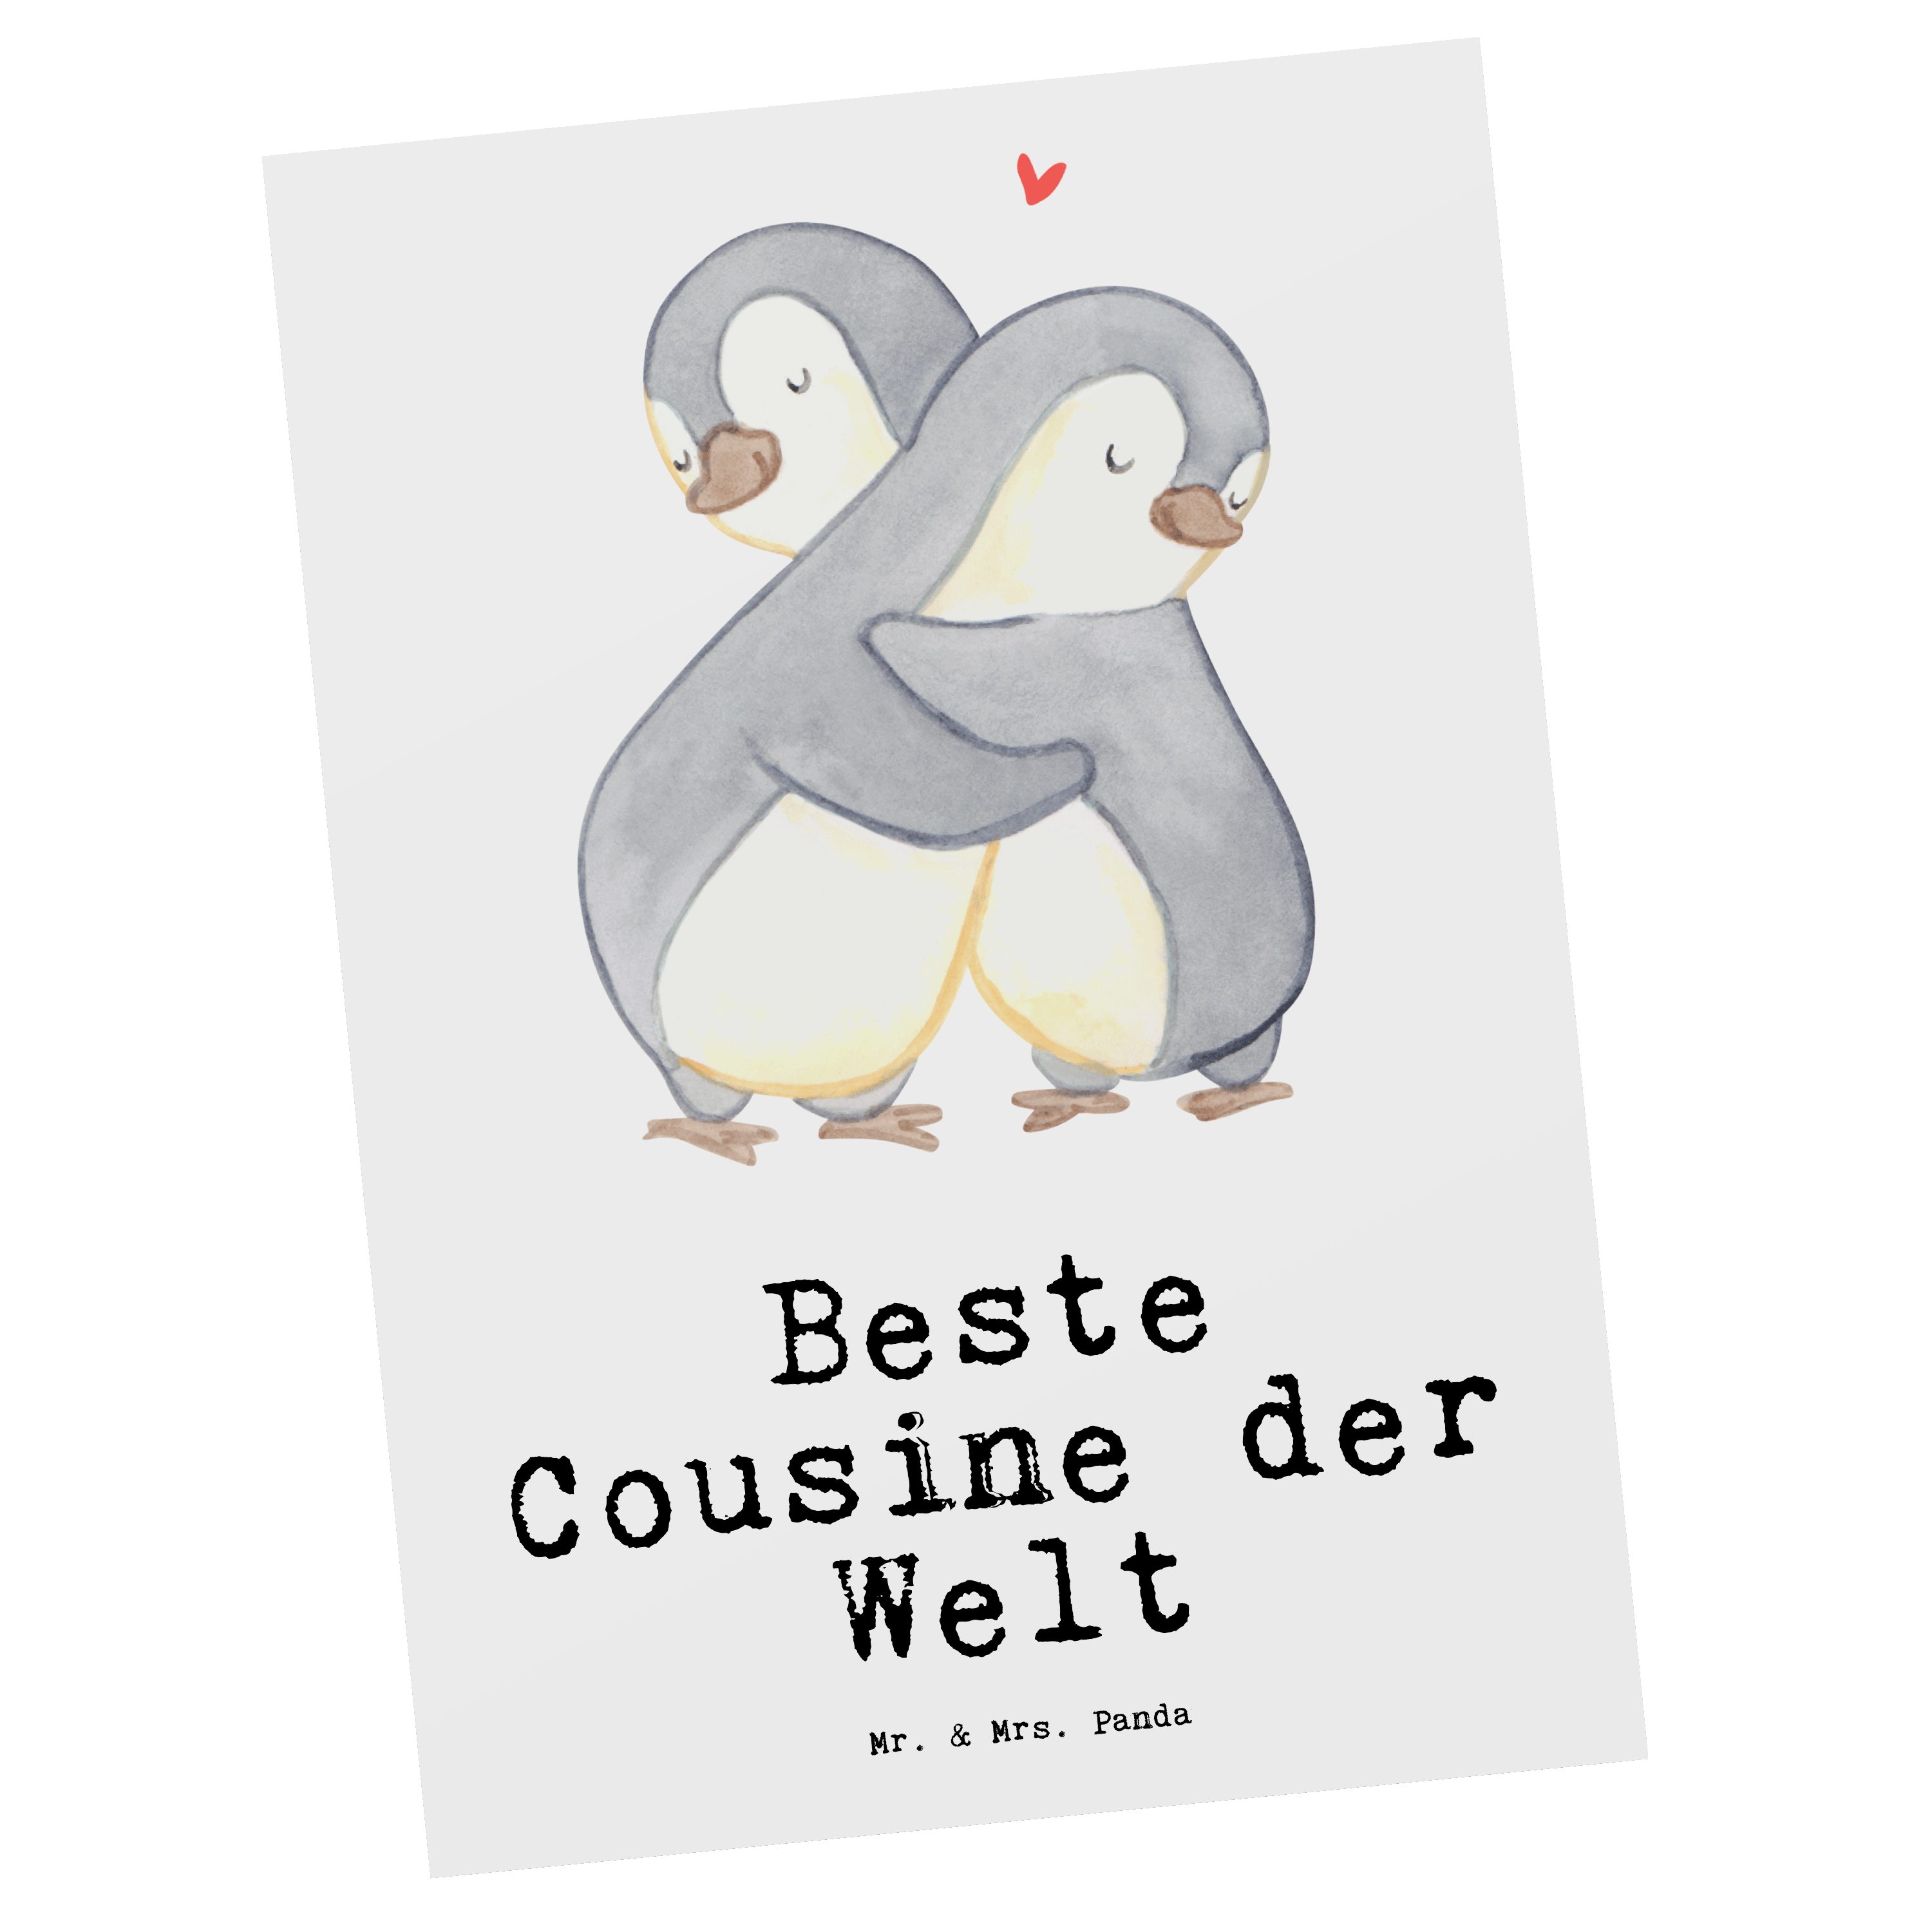 Geburtstagsgeschenk Panda Beste Geschenk, Pinguin Mr. Mrs. der Weiß & - Welt - Cousine Postkarte